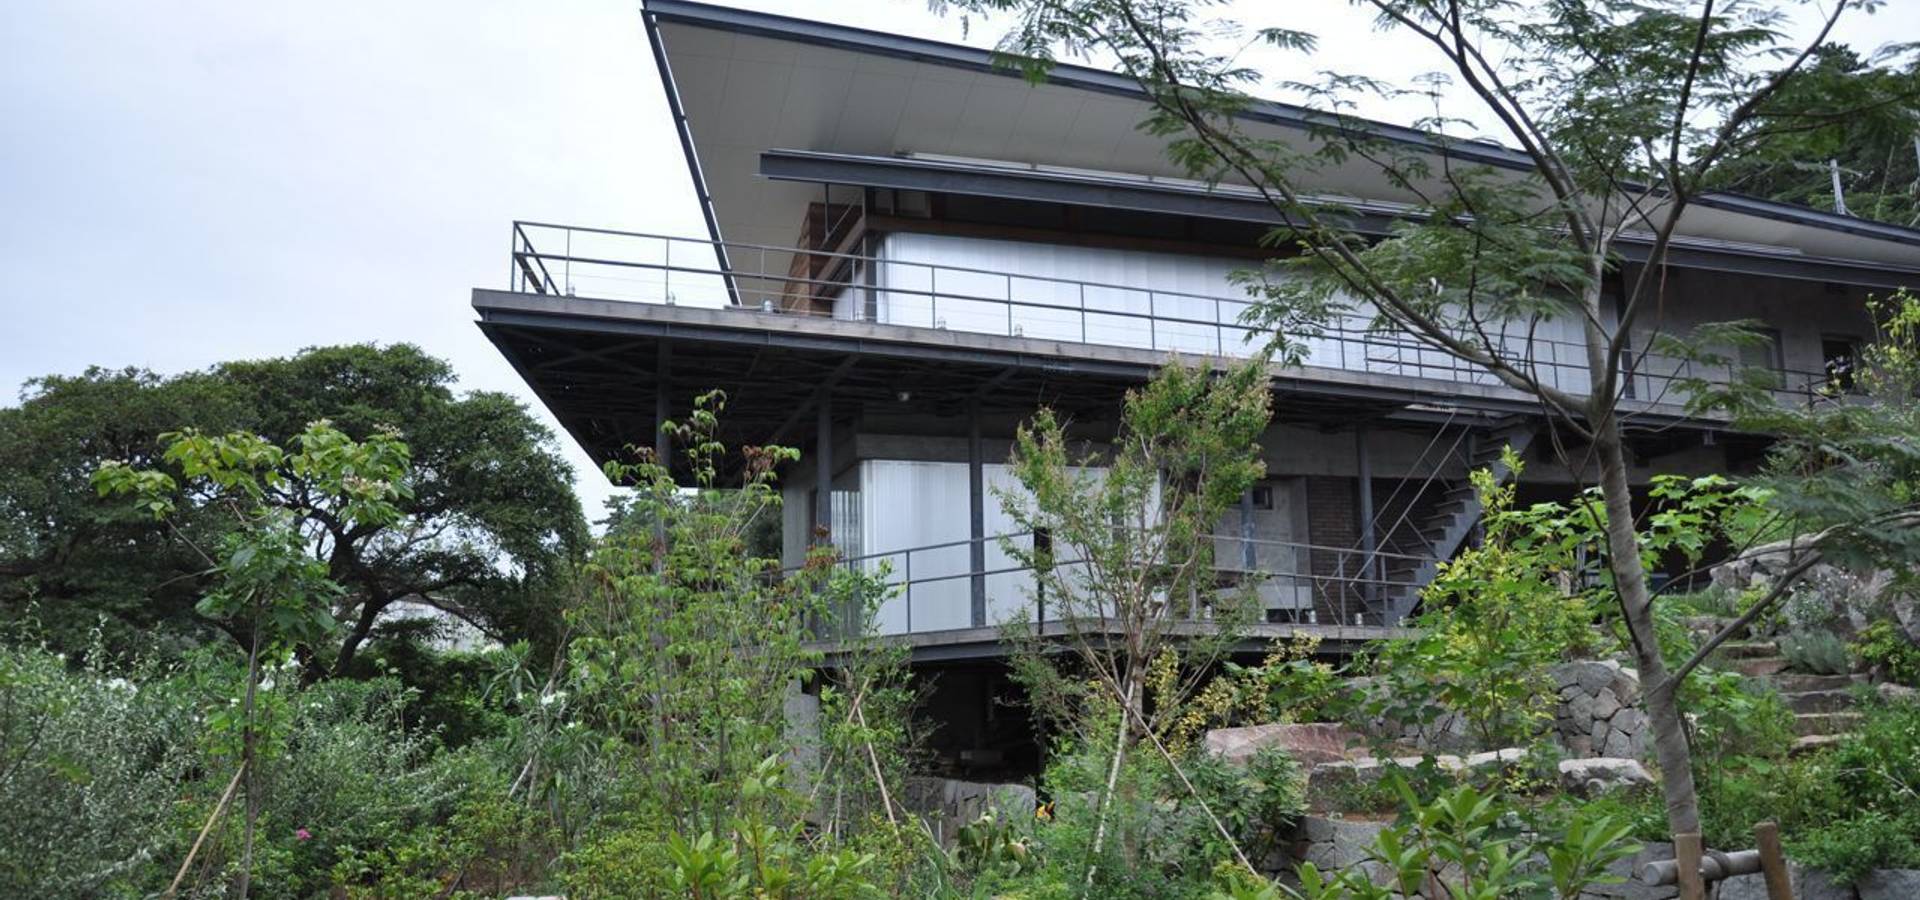 有限会社 温室 Landscape Architects In 東京都 Homify